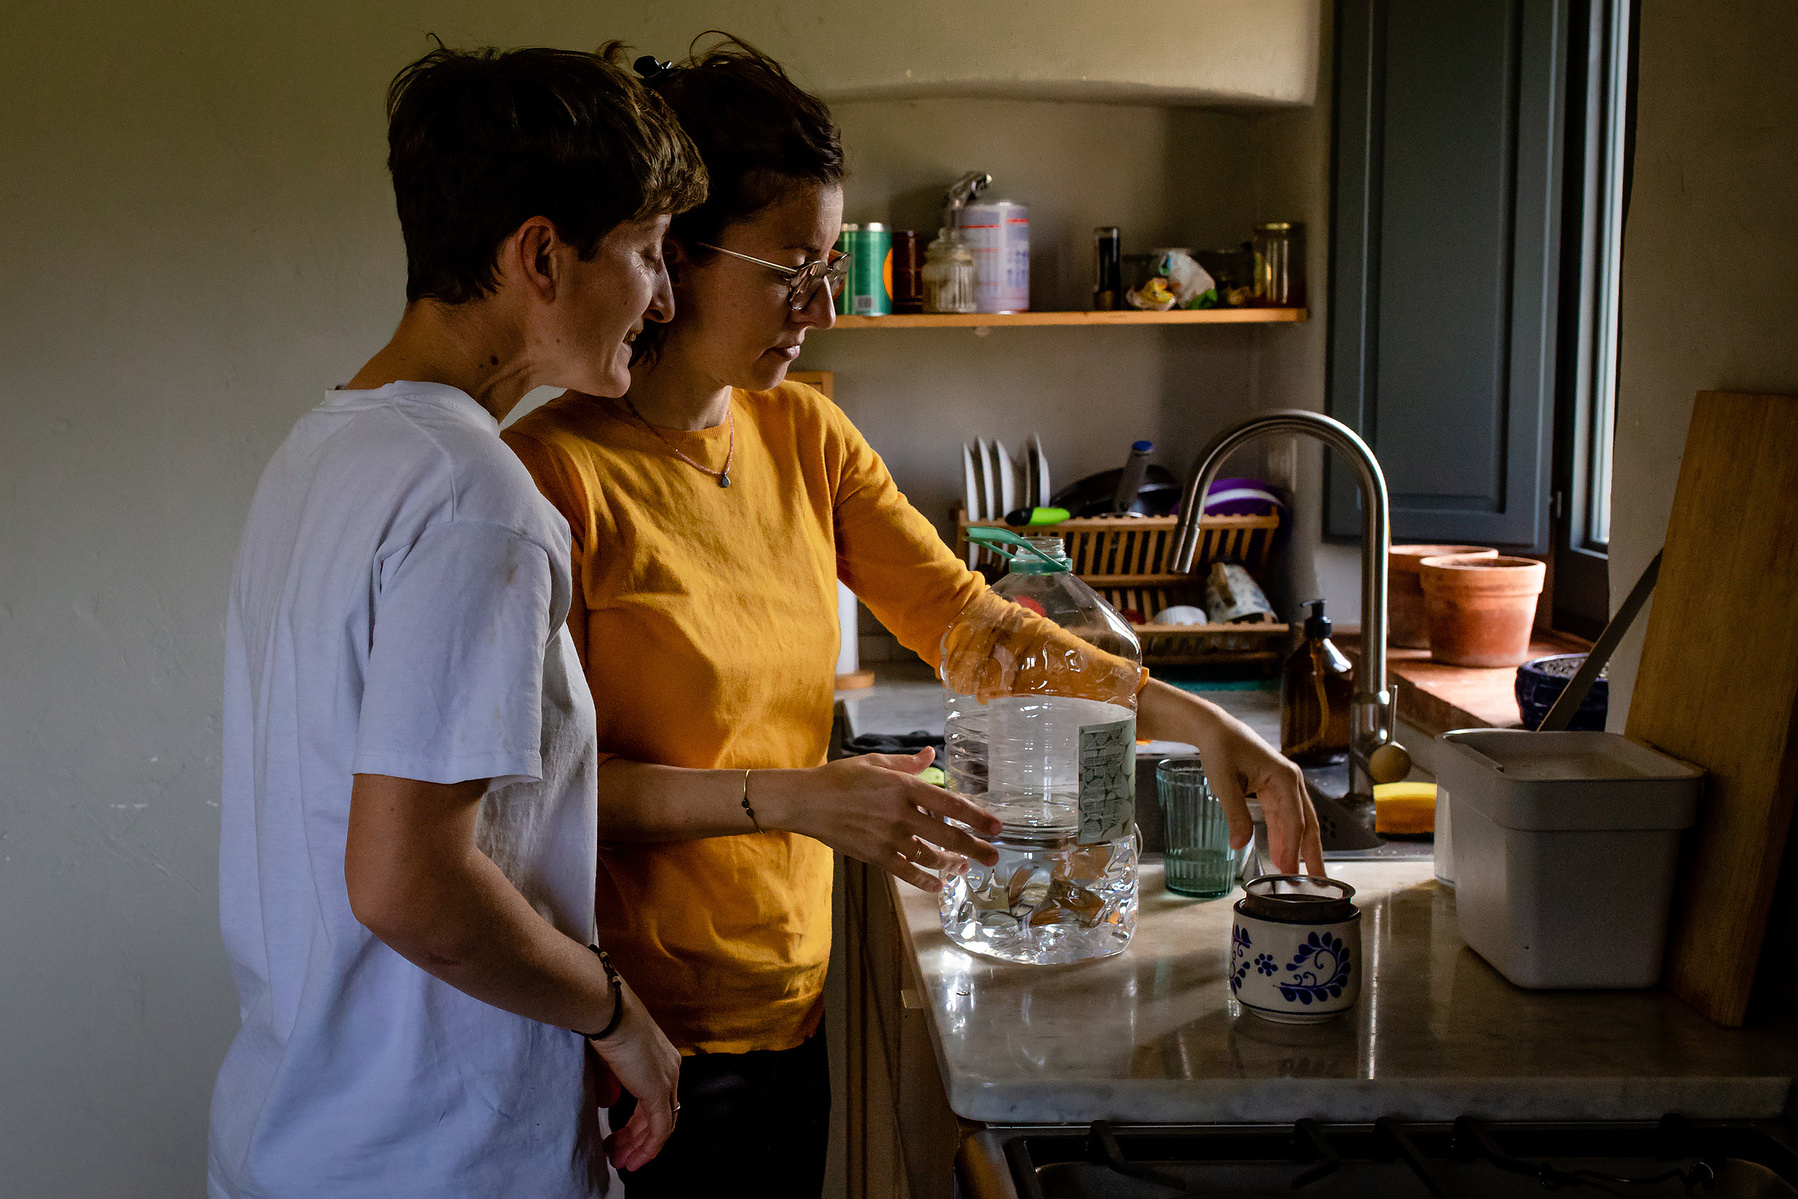 dos mamás en su  cocina,  Manuela Franjou fotografia de maternidad